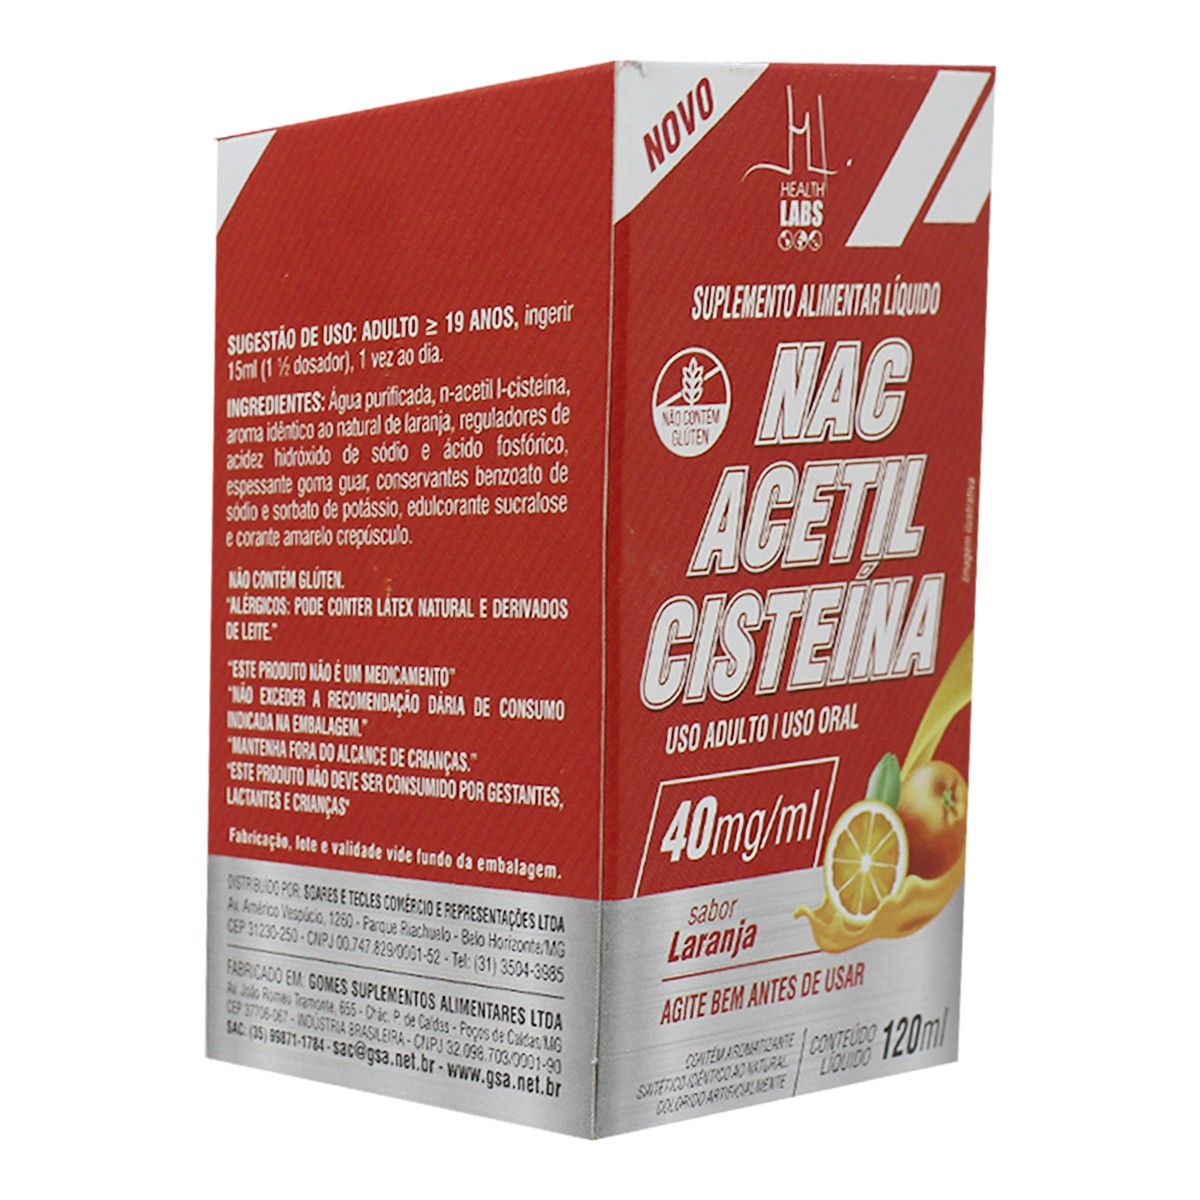 Comprar Acetilcisteína 20mg/ml Xarope Infantil 120ml Ems